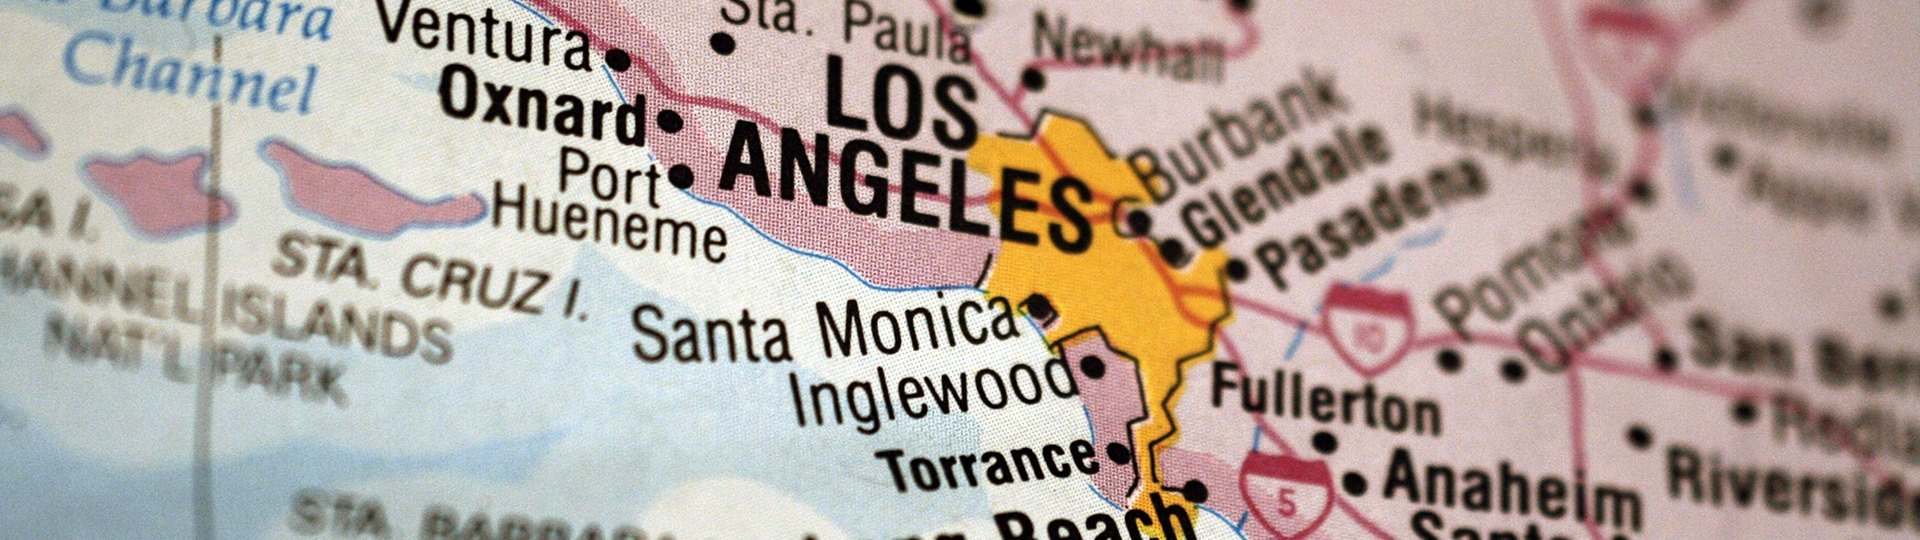 Баннер с увеличенной картой округа Los Angeles с выделенным Лос-Анджелесом и прилегающими районами.